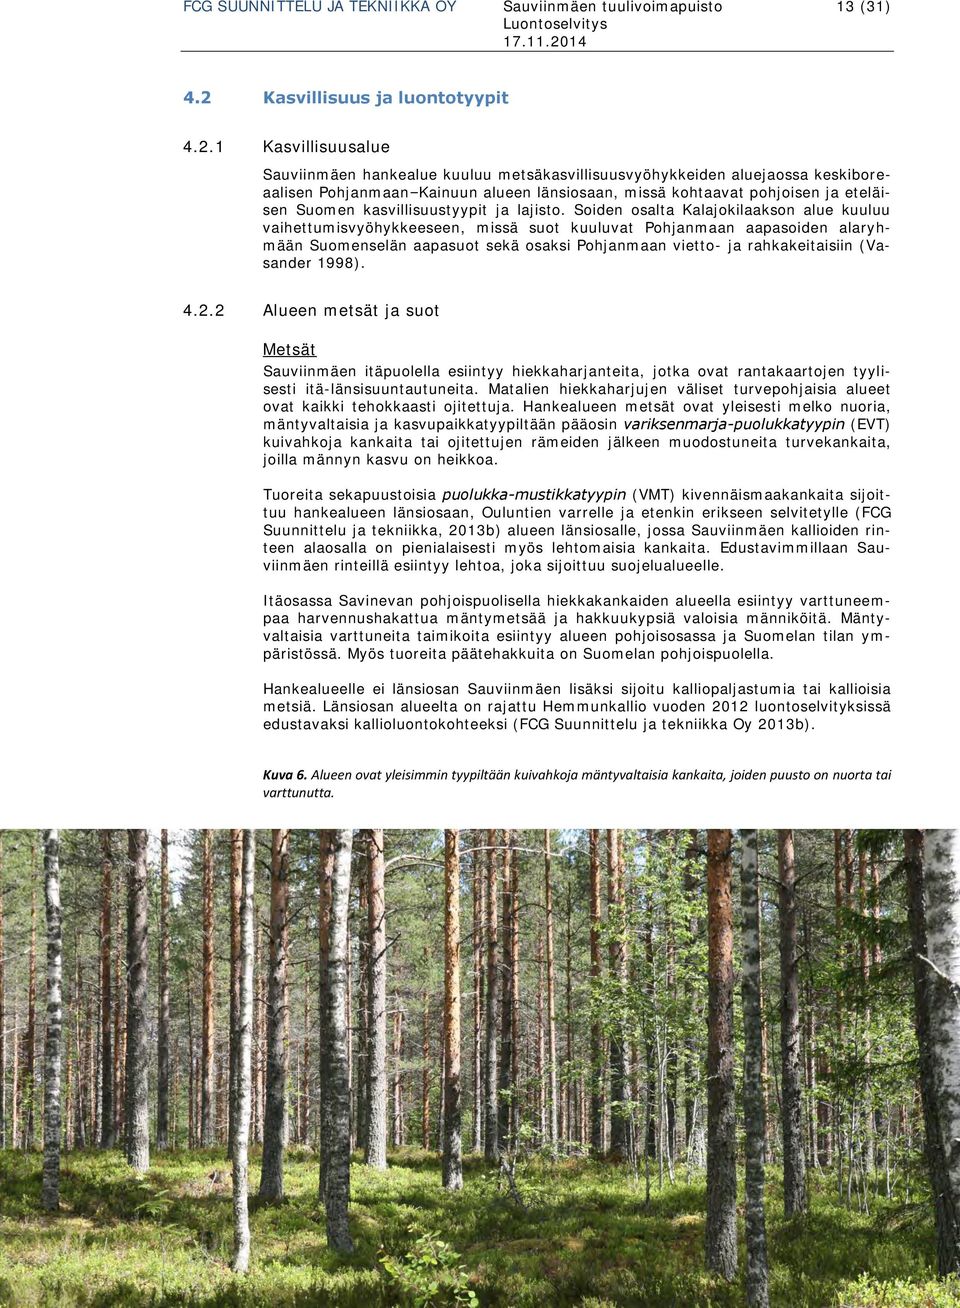 1 Kasvillisuusalue Sauviinmäen hankealue kuuluu metsäkasvillisuusvyöhykkeiden aluejaossa keskiboreaalisen Pohjanmaan Kainuun alueen länsiosaan, missä kohtaavat pohjoisen ja eteläisen Suomen